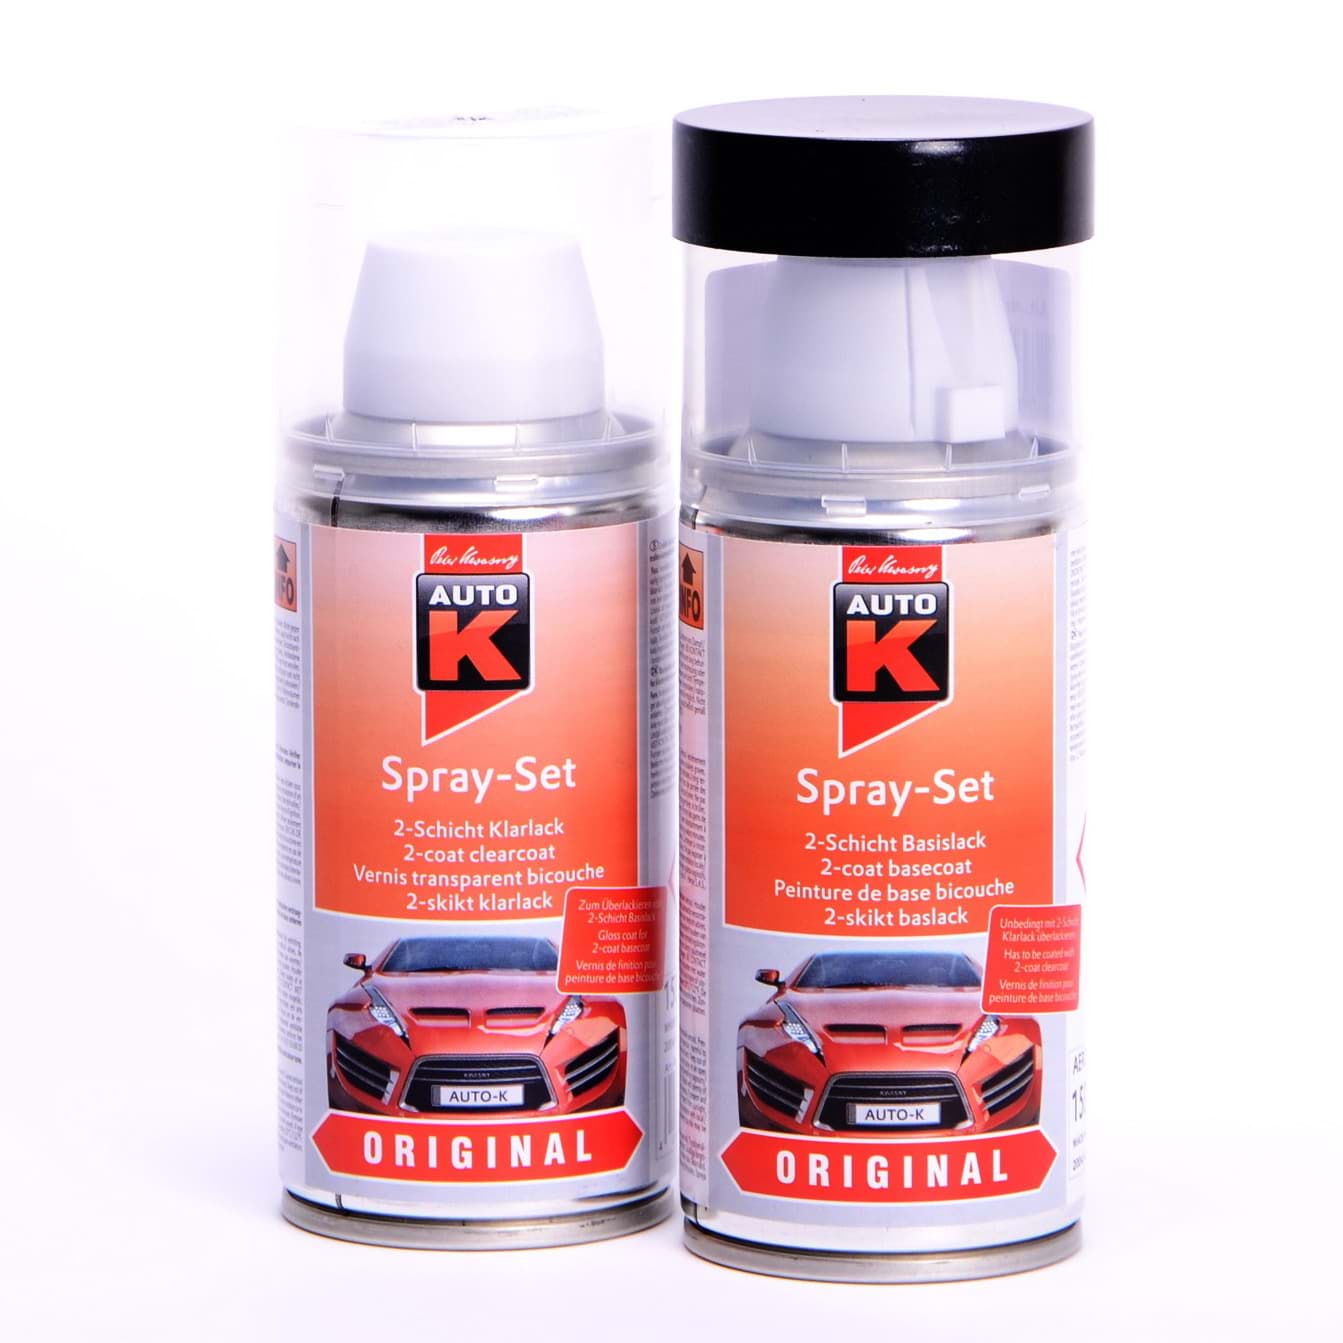 Afbeelding van Auto-K Spray-Set Autolack für BMW A22 Sparkling Graphit met 27339